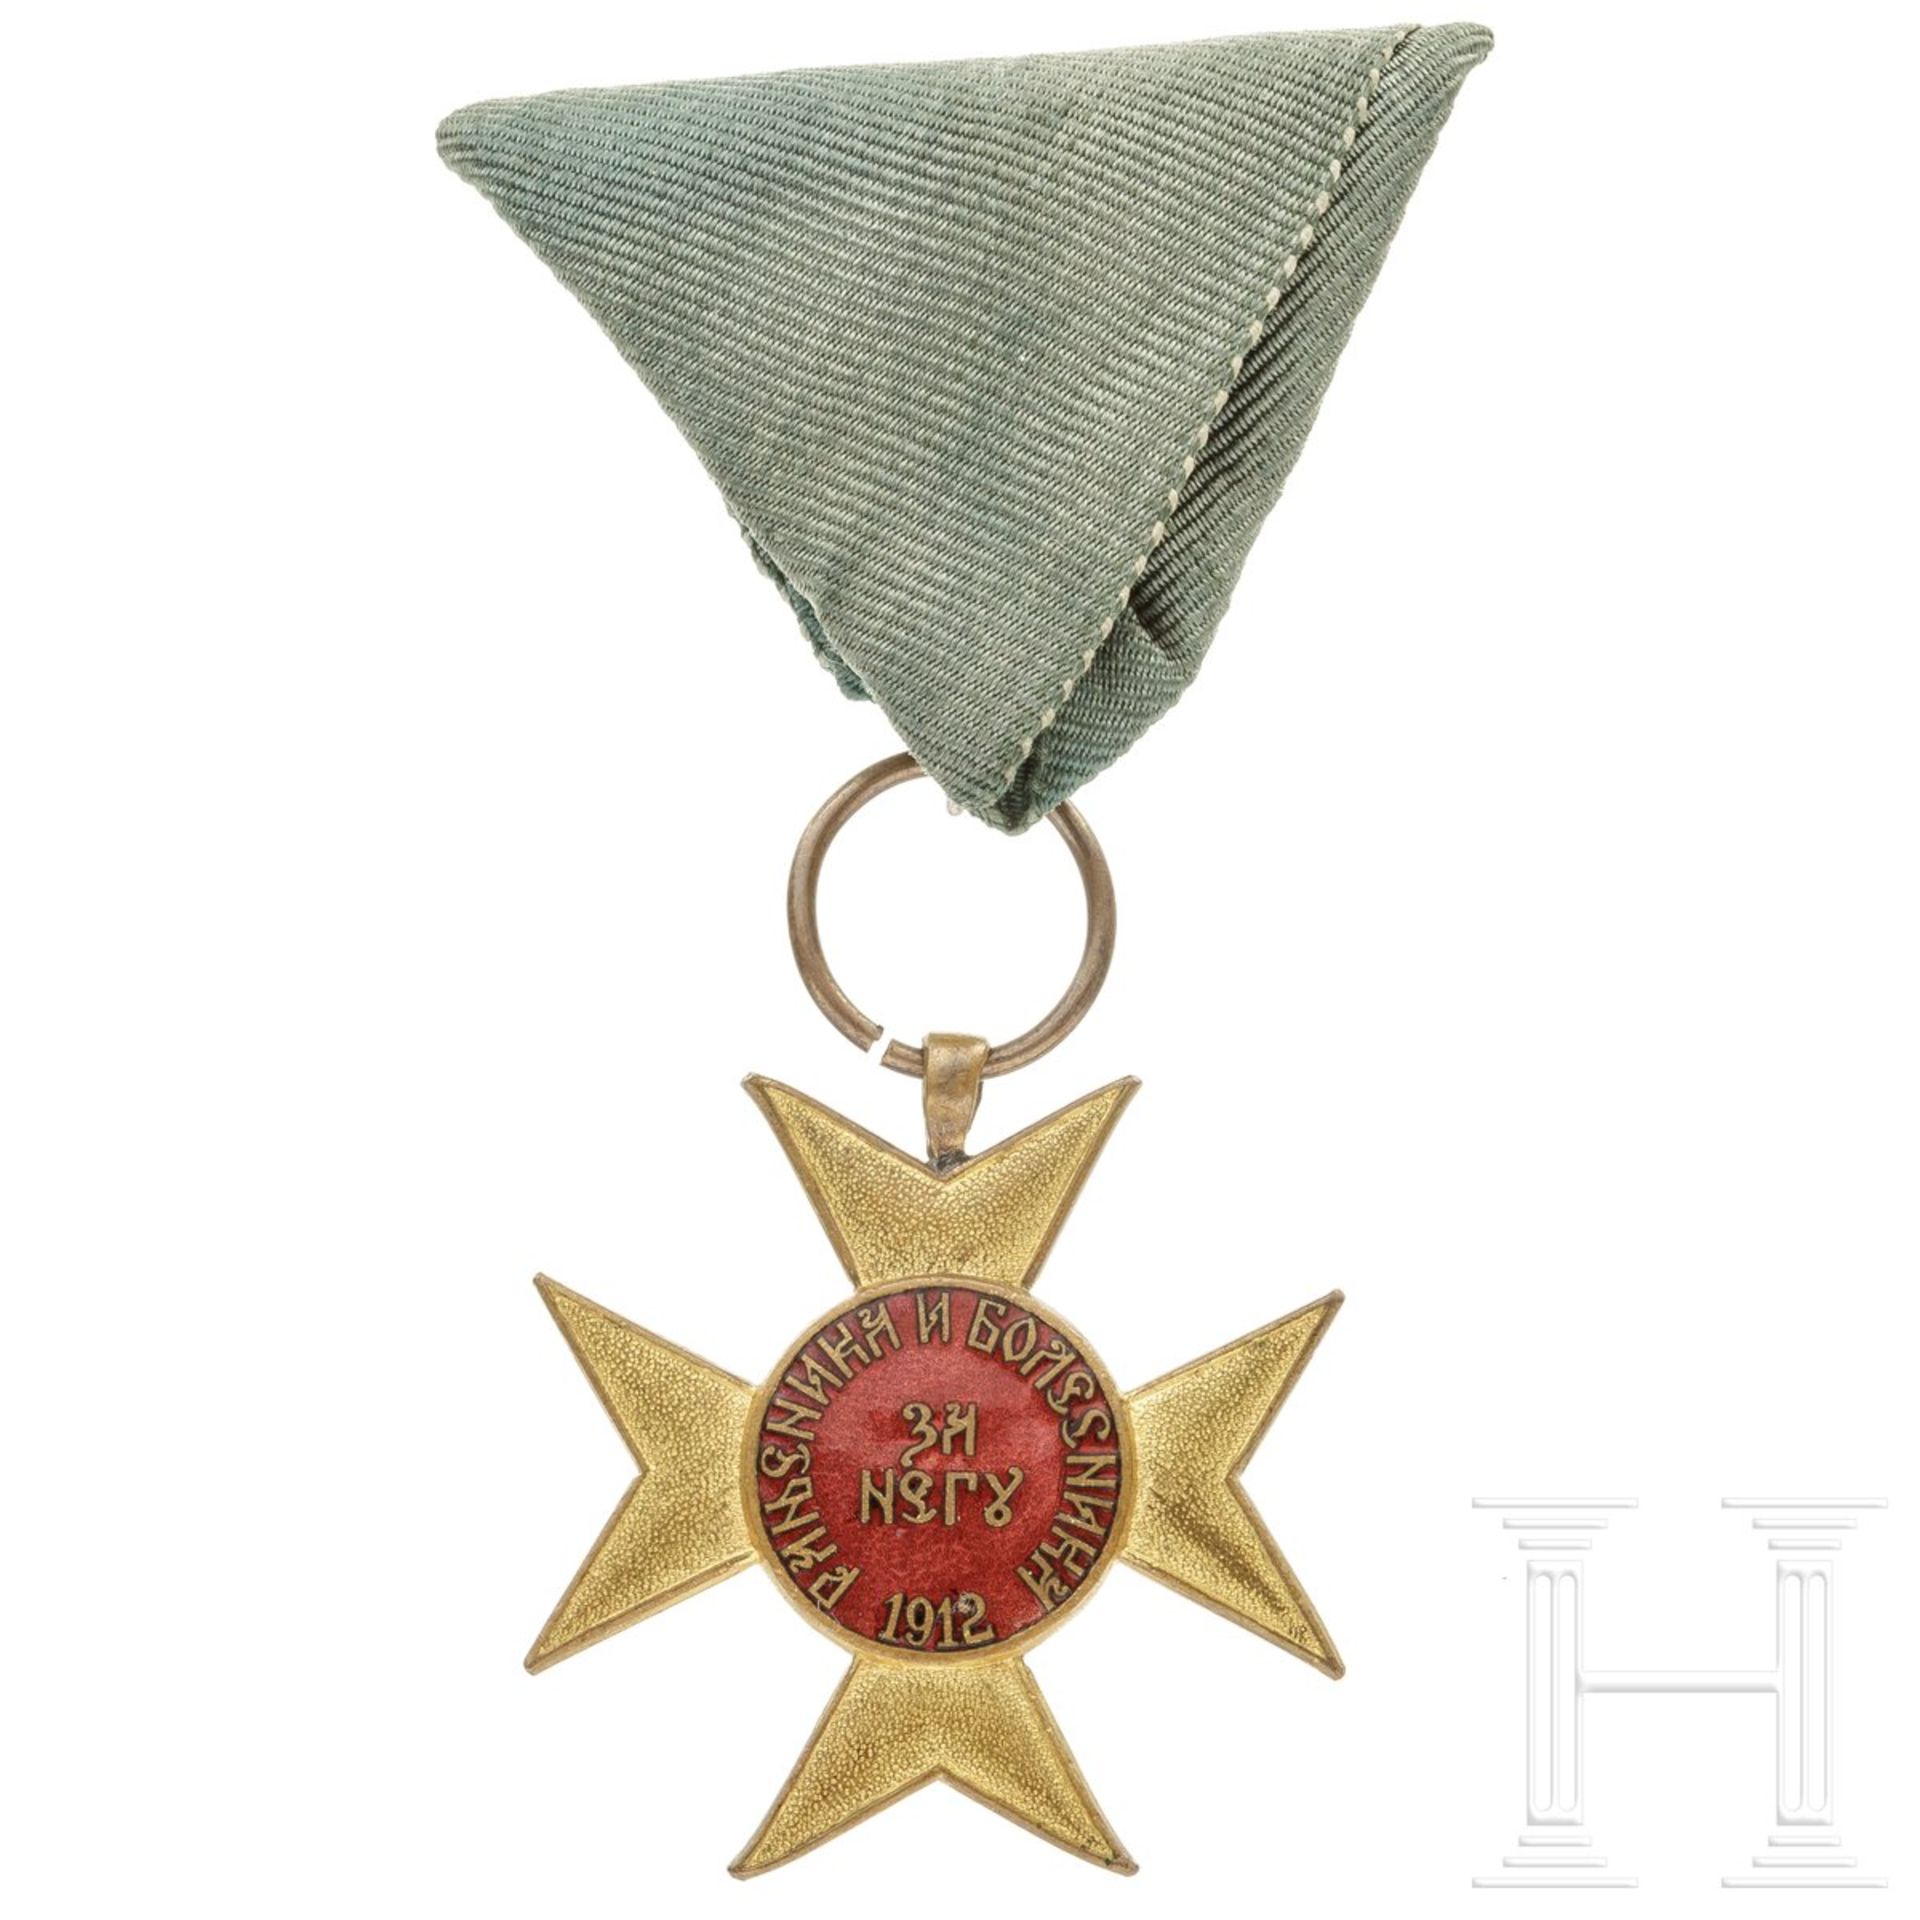 Serbien - Kreuz zum Balkankrieg, datiert 1912